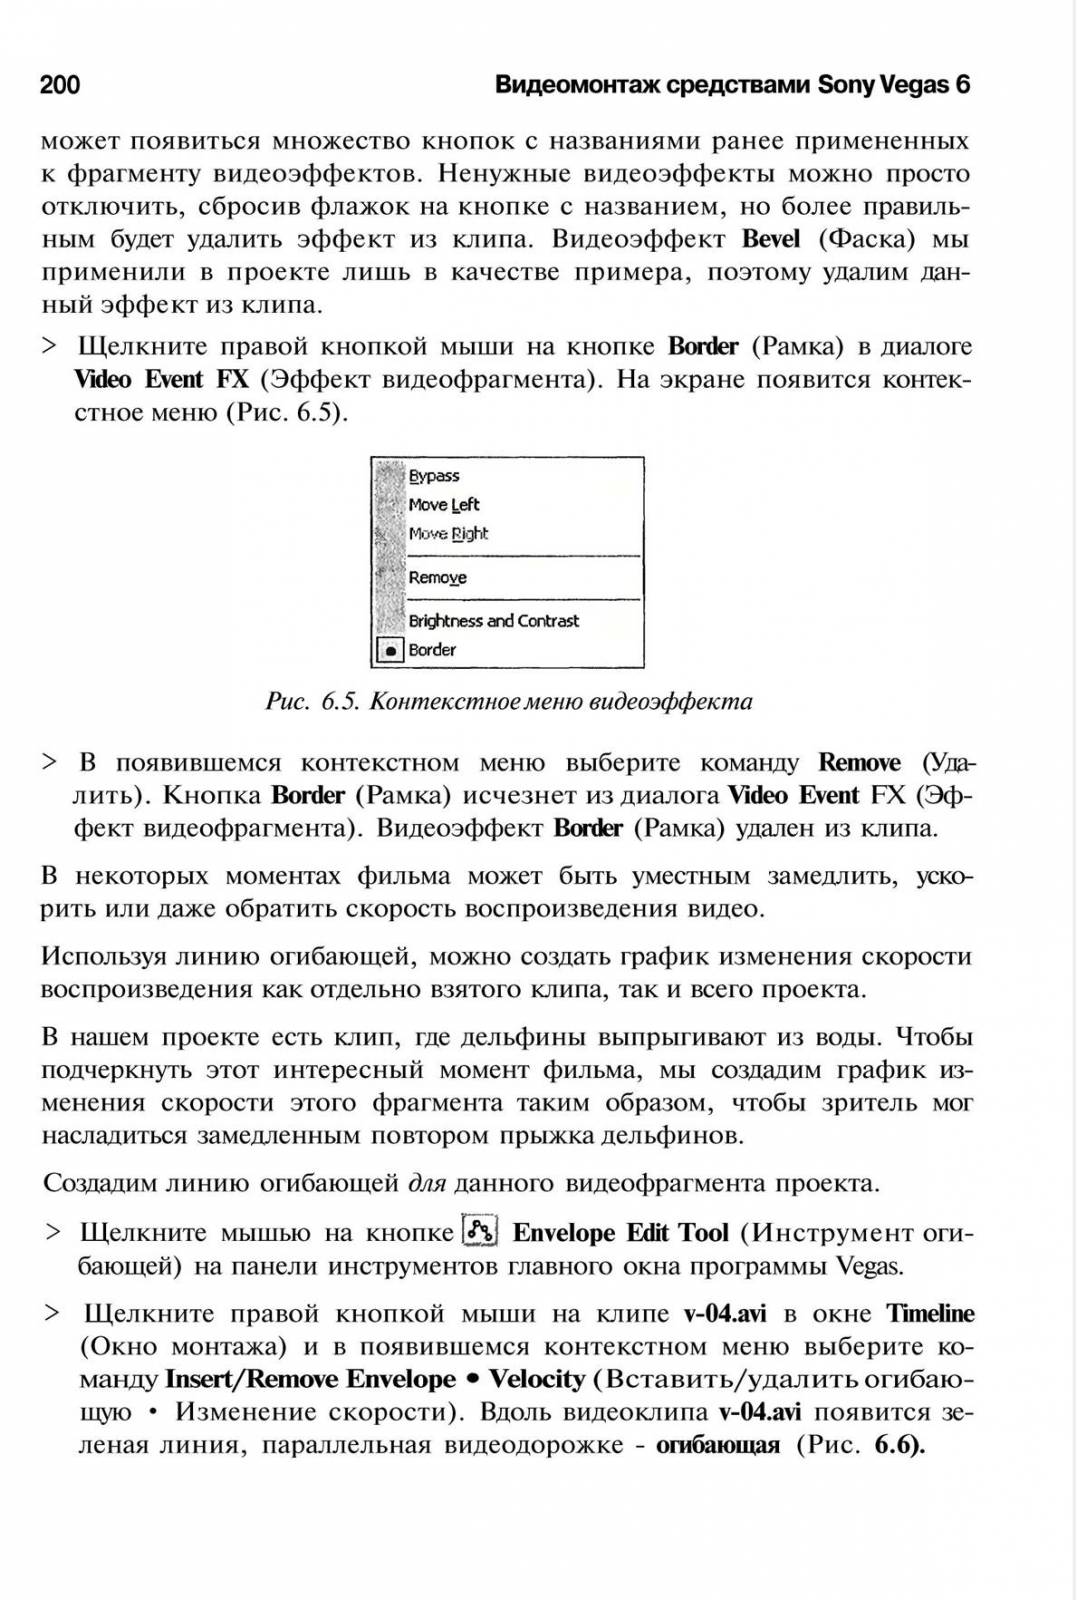 http://redaktori-uroki.3dn.ru/_ph/14/508523385.jpg